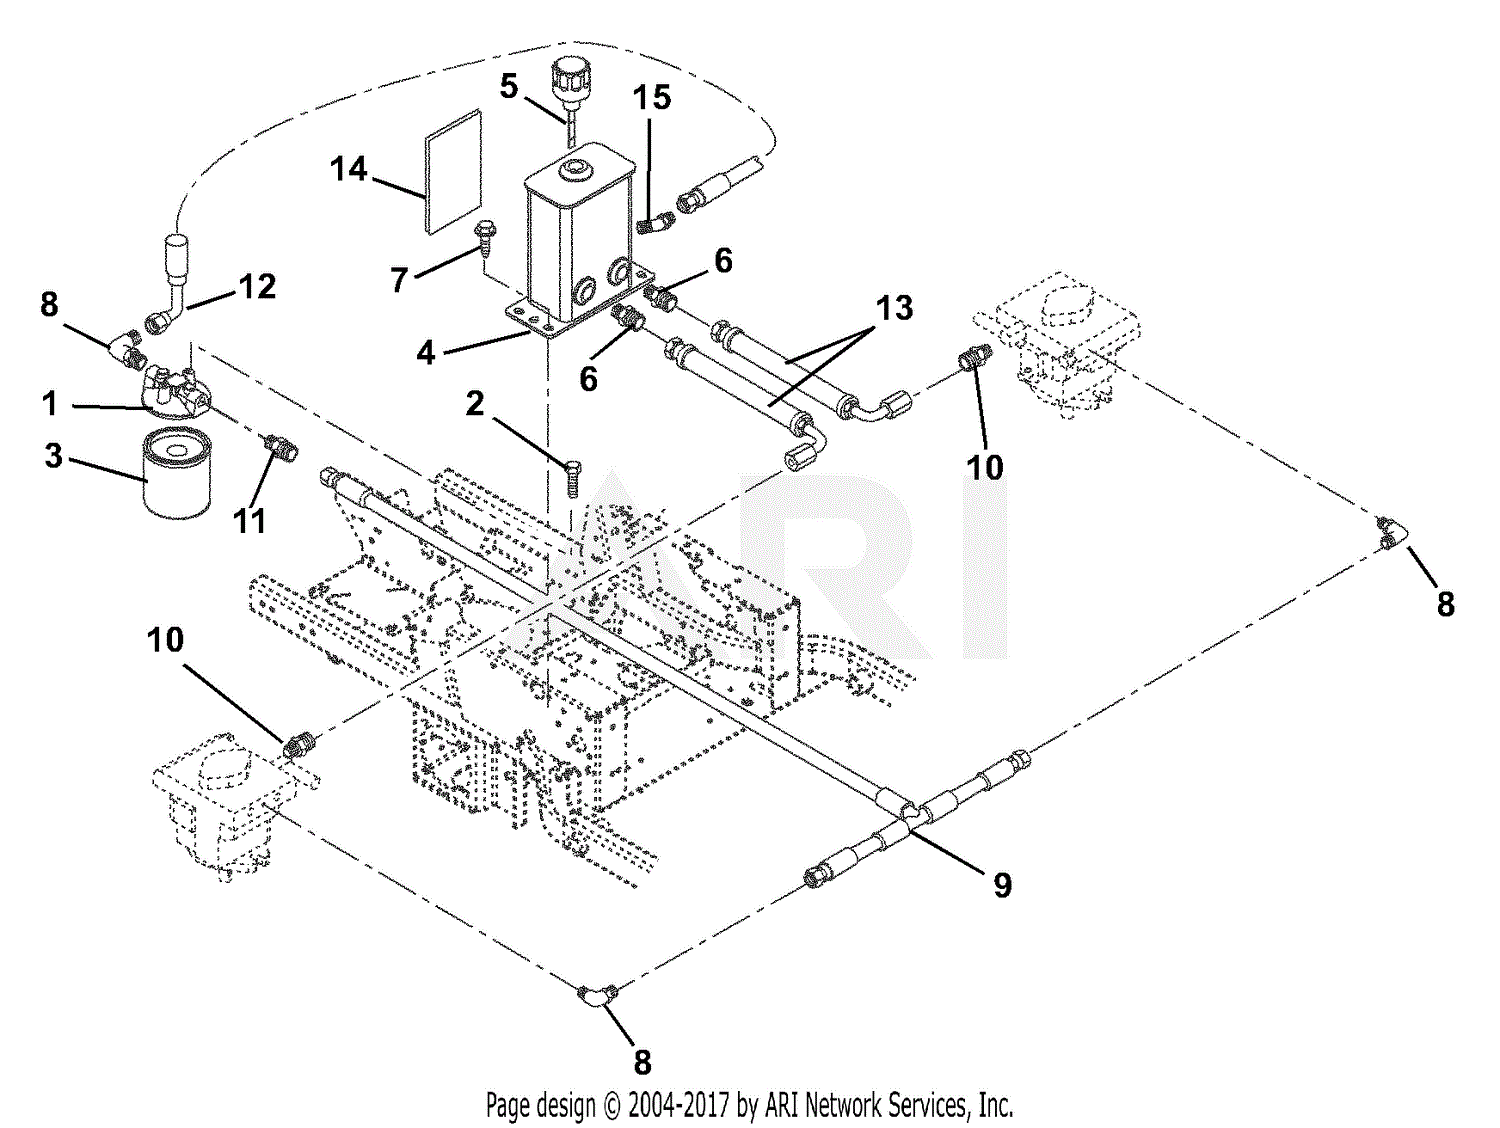 [DIAGRAM] Wiring Diagram Hydraulic Lift FULL Version HD Quality